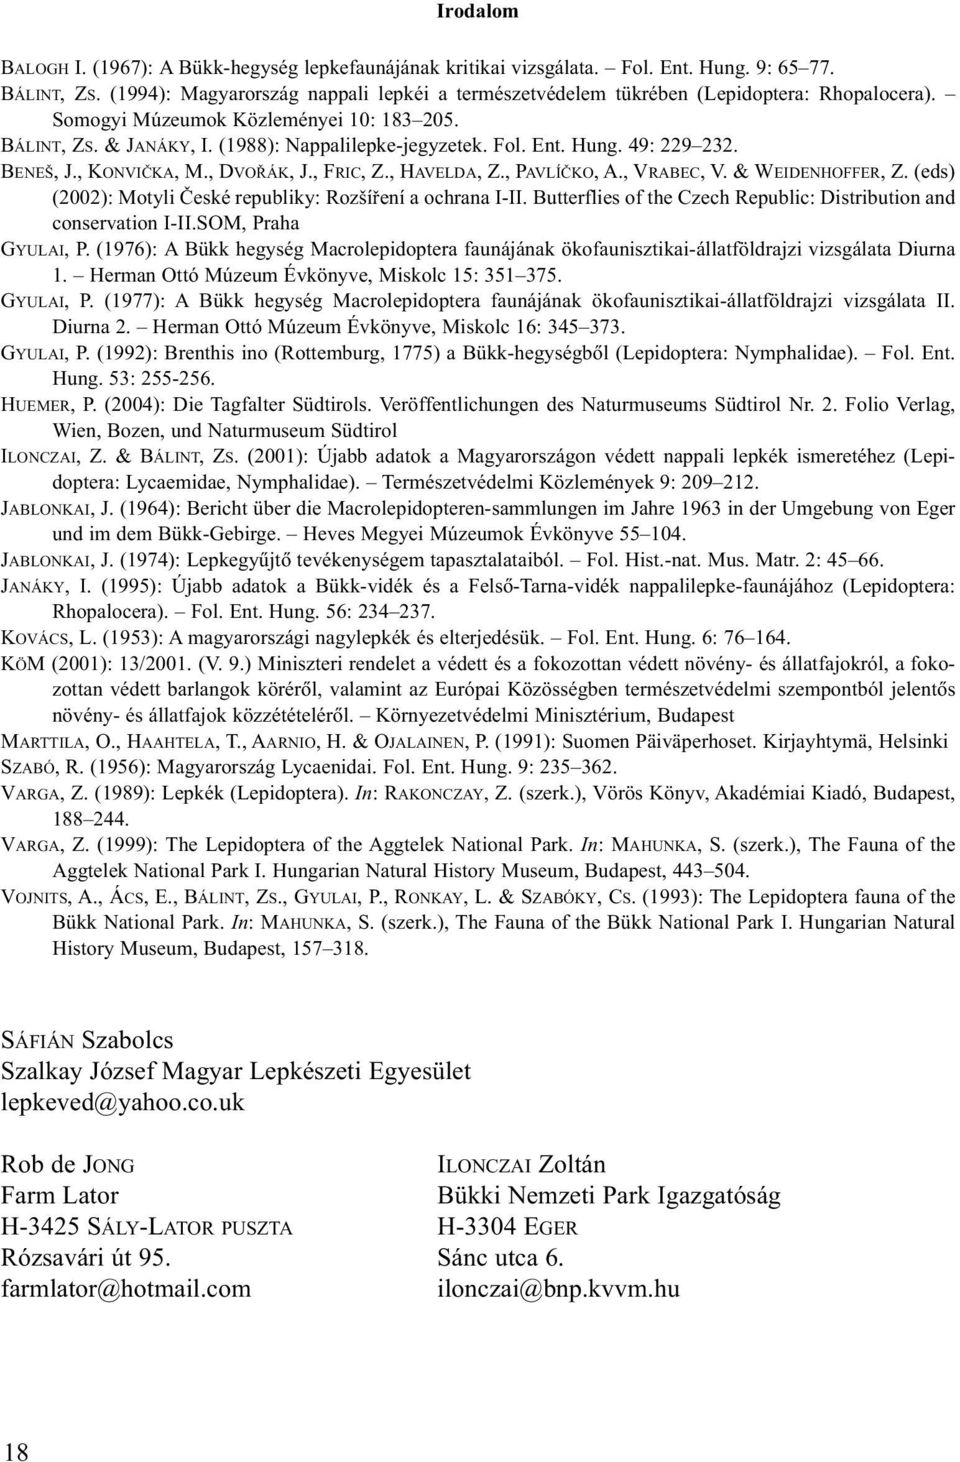 Hung. 49: 229 232. BENEŠ, J., KONVIČKA, M., DVOŘÁK, J., FRIC, Z., HAVELDA, Z., PAVLÍČKO, A., VRABEC, V. & WEIDENHOFFER, Z. (eds) (2002): Motyli České republiky: Rozšíření a ochrana I-II.